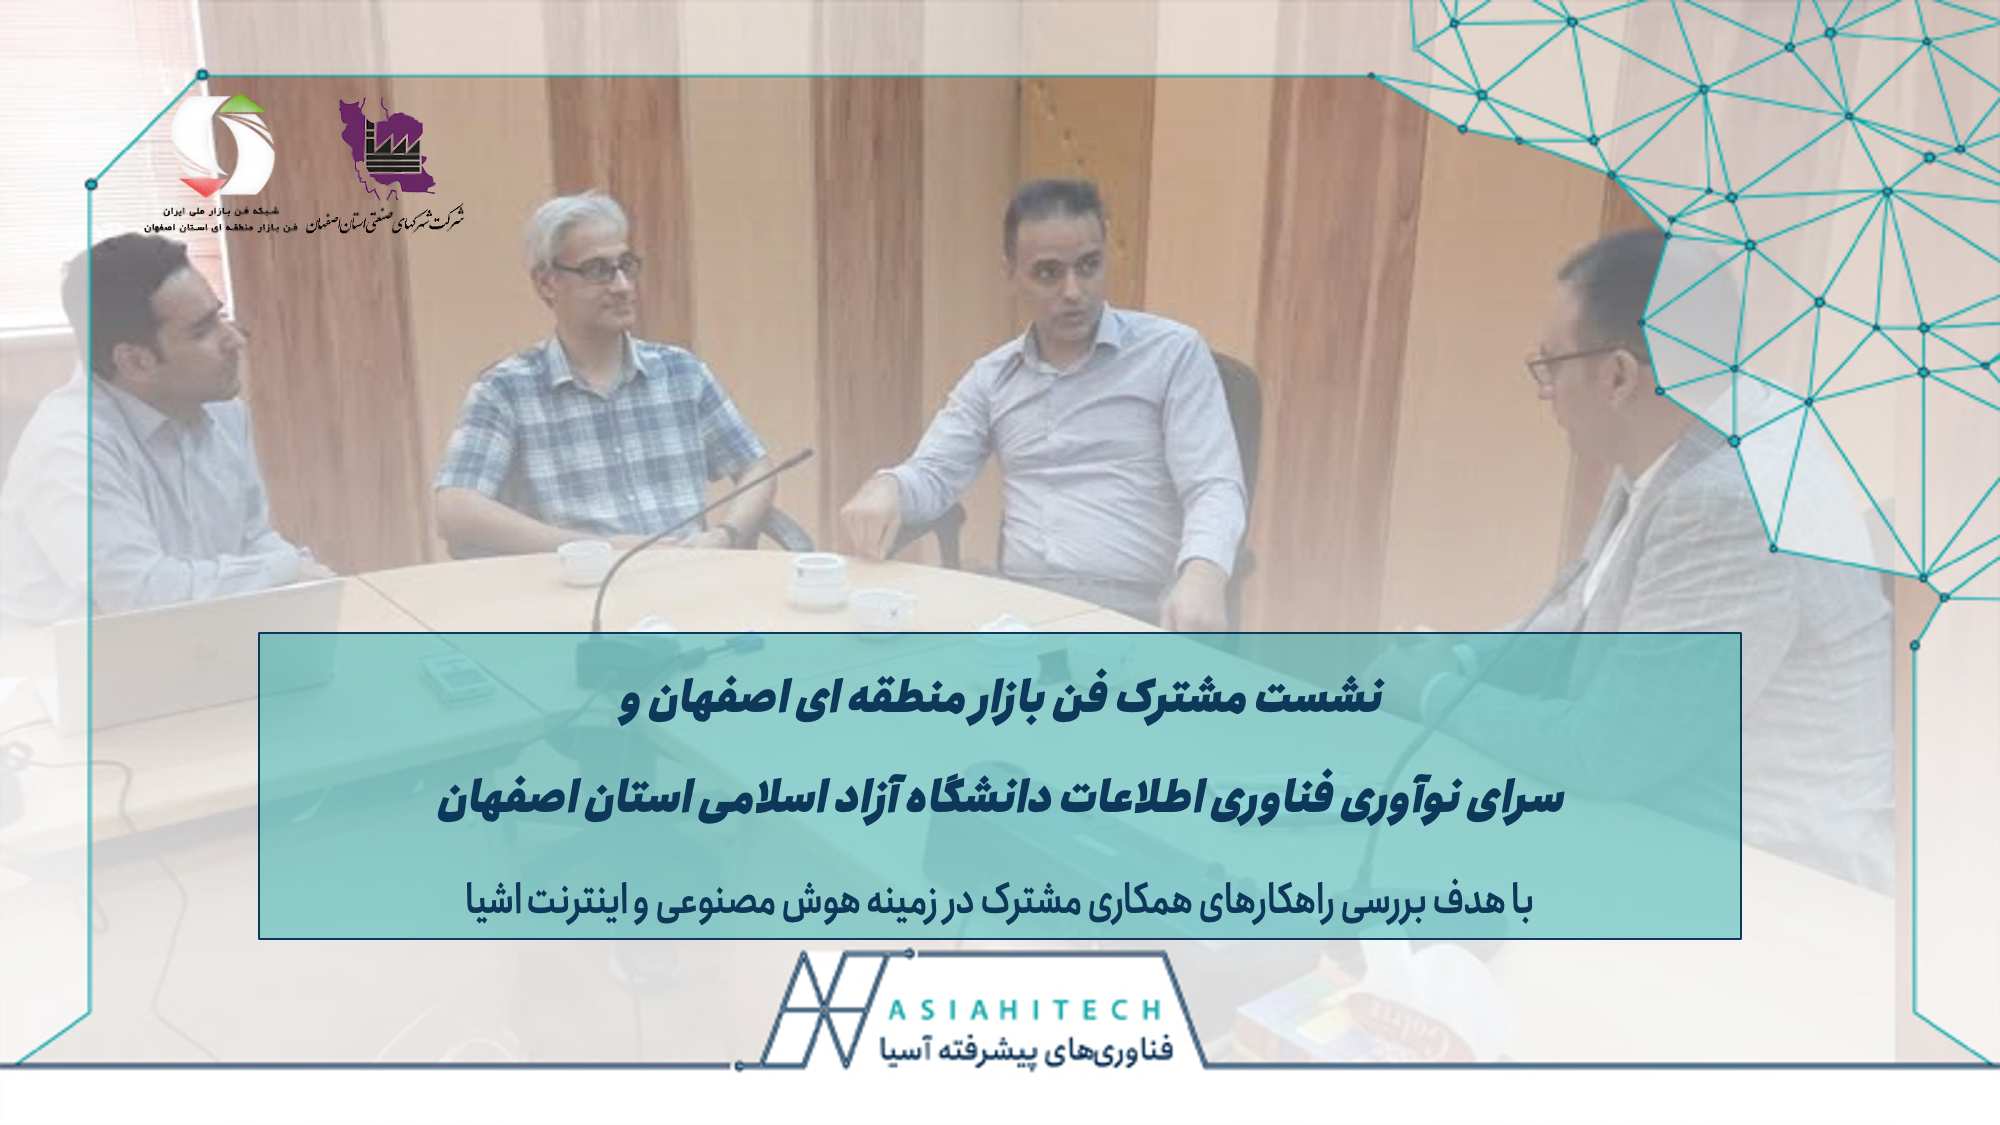 راهکارهای توسعه هوش مصنوعی در اکوسیستم استان اصفهان بررسی شد.